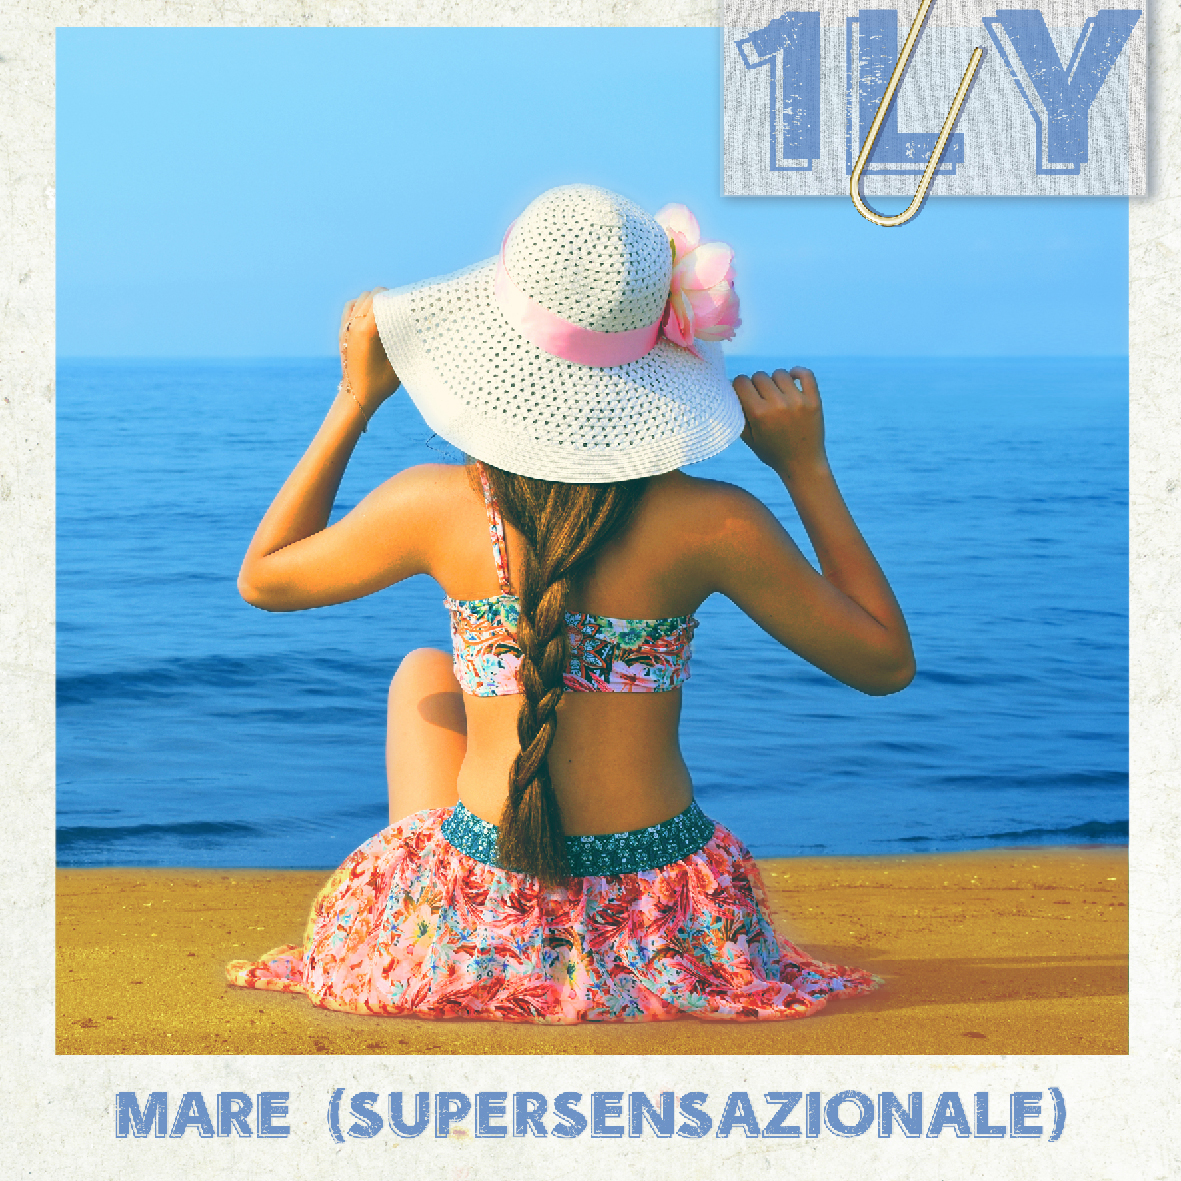 Mare (Supersensazionale): scopriamo il videoclip del brano d'esordio di 1LY